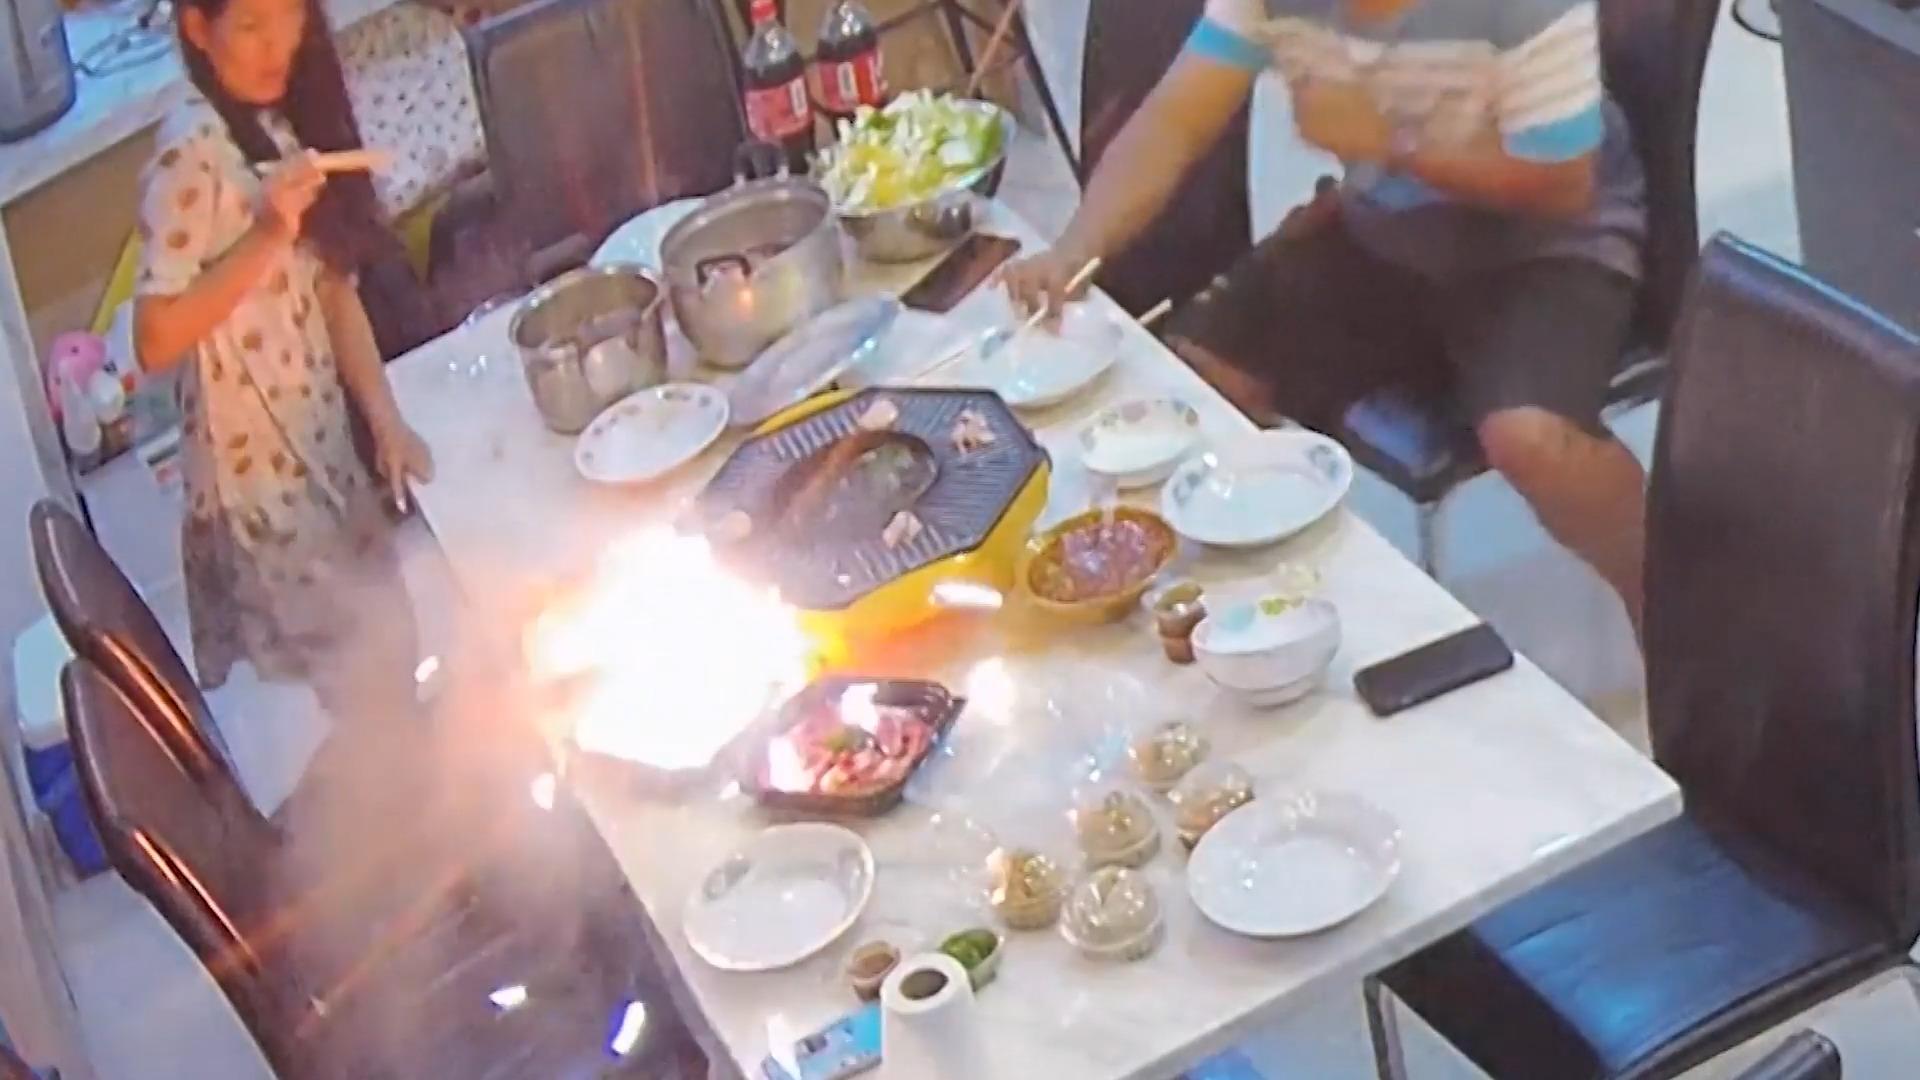 Hotpot geht bei Familienessen in Flammen auf Explosion in Thailand